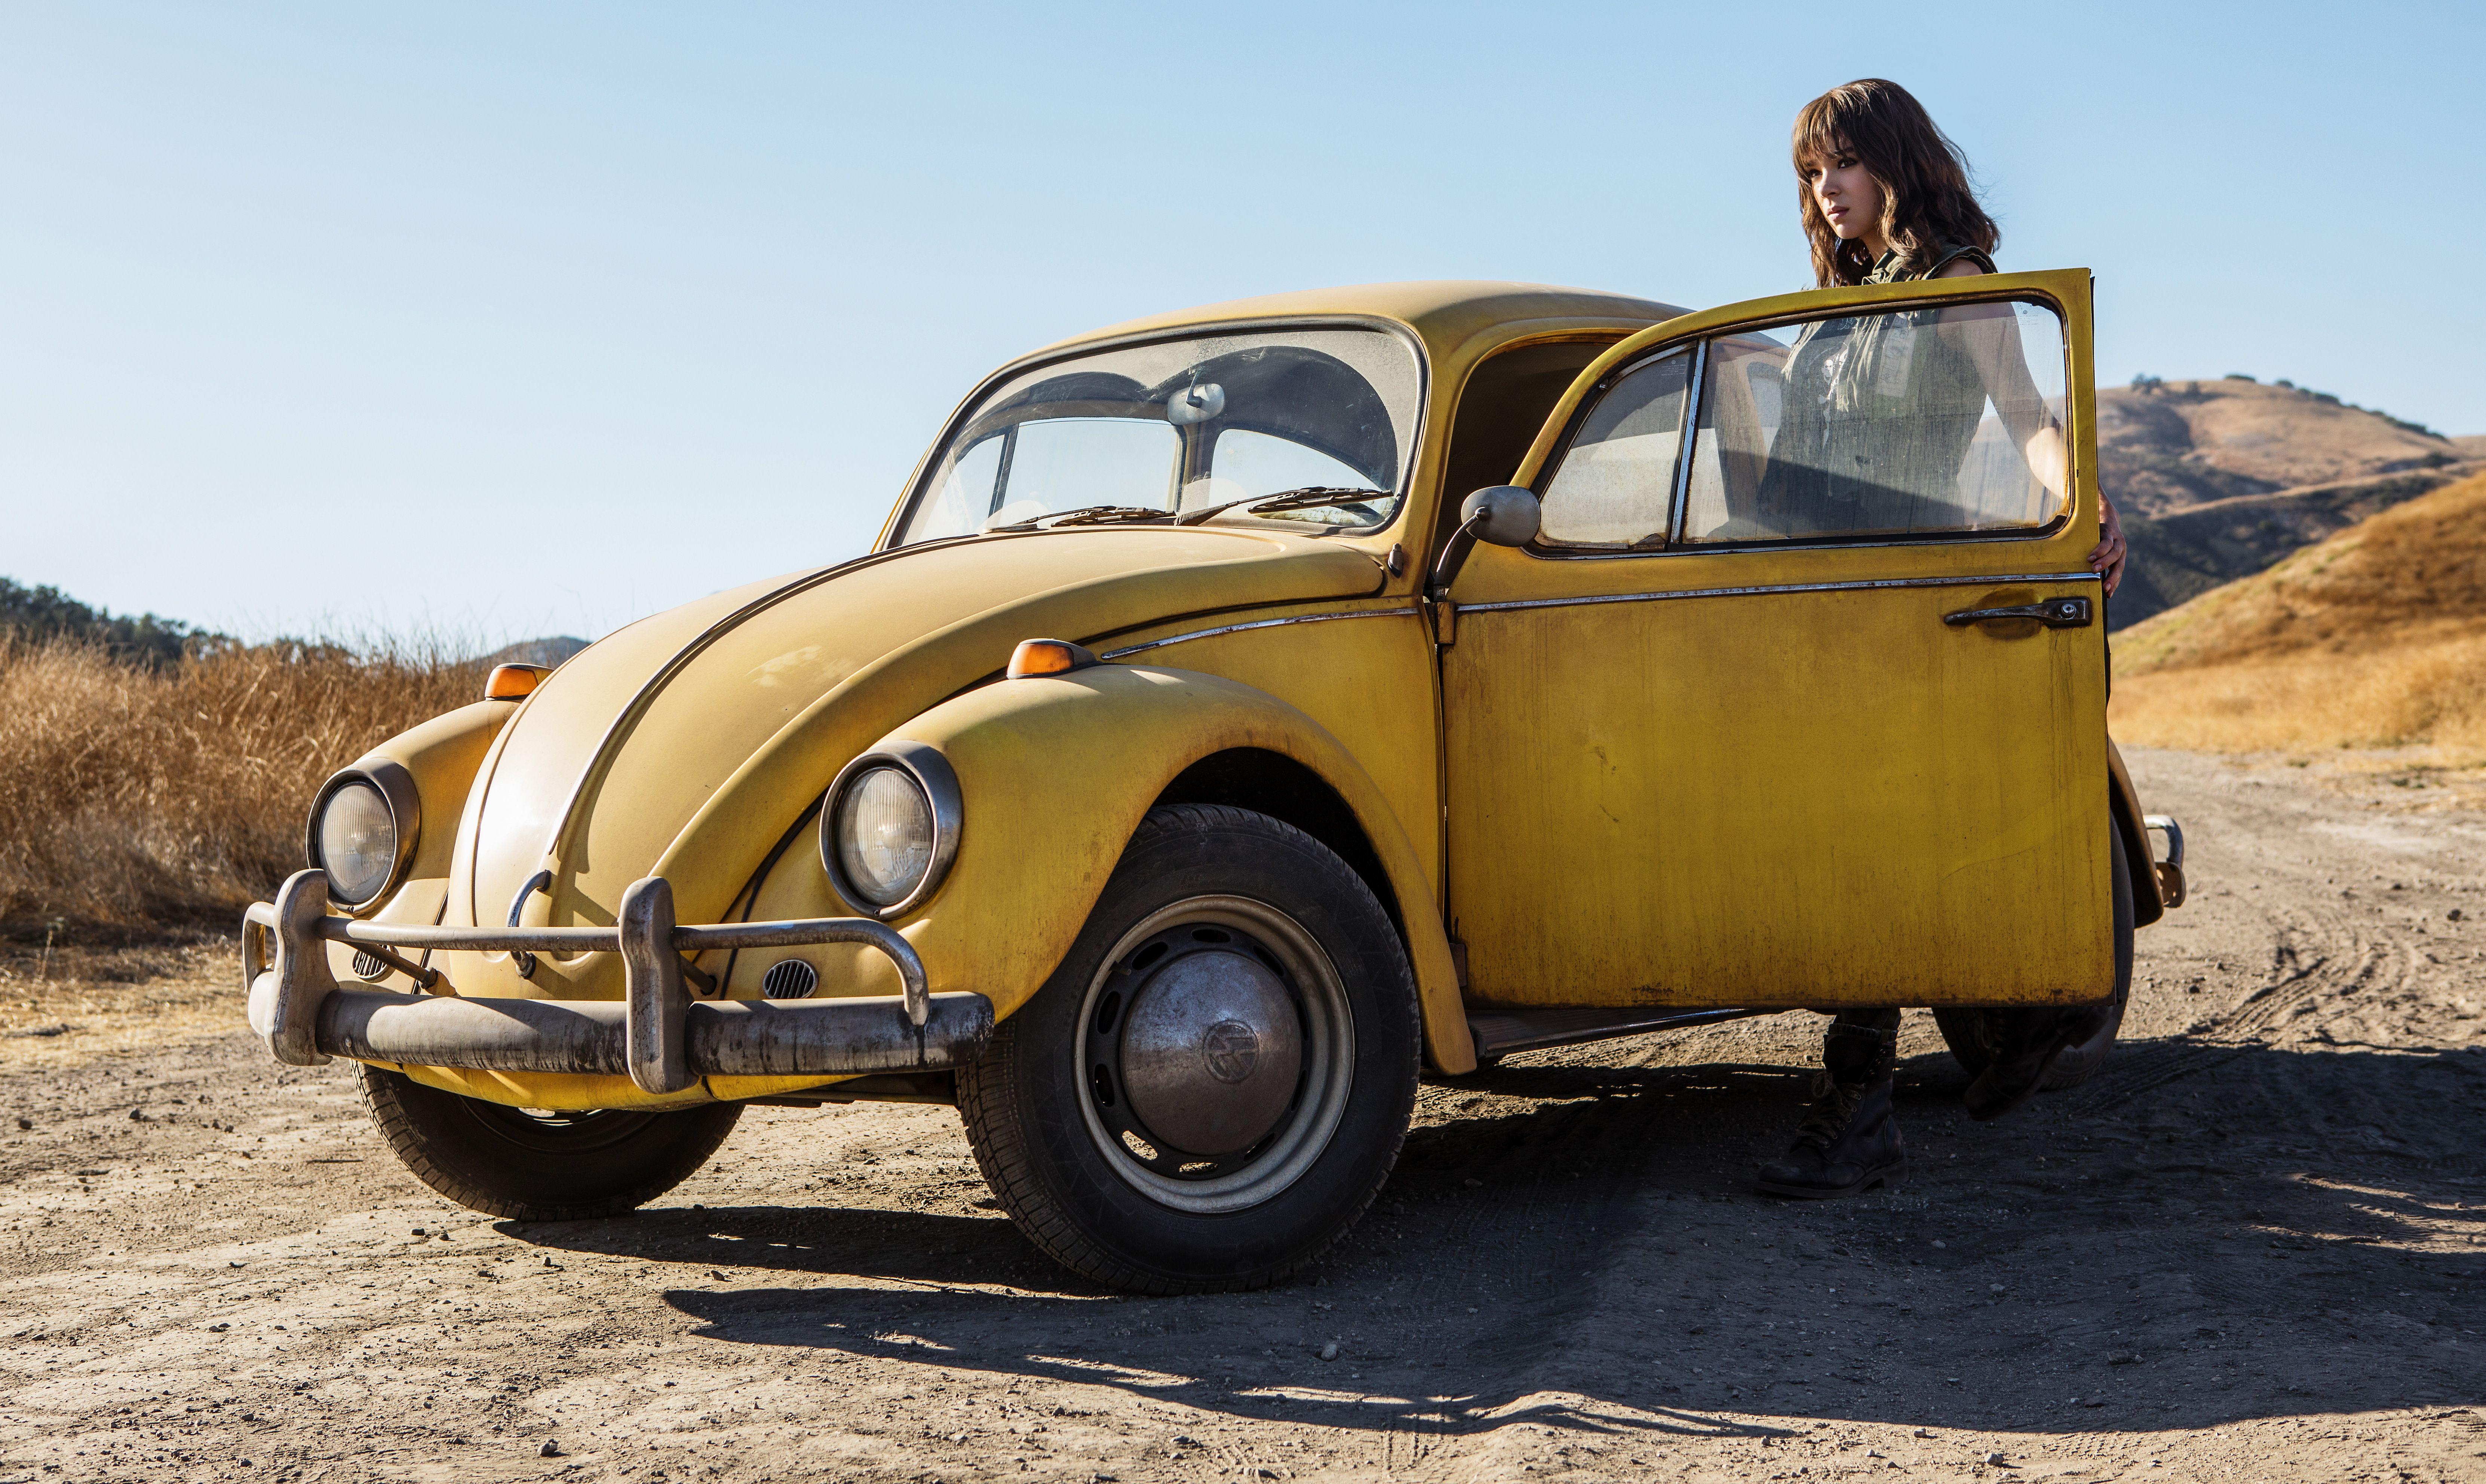 Hailee Steinfeld In Bumblebee Movie 2018 5k, HD Movies, 4k